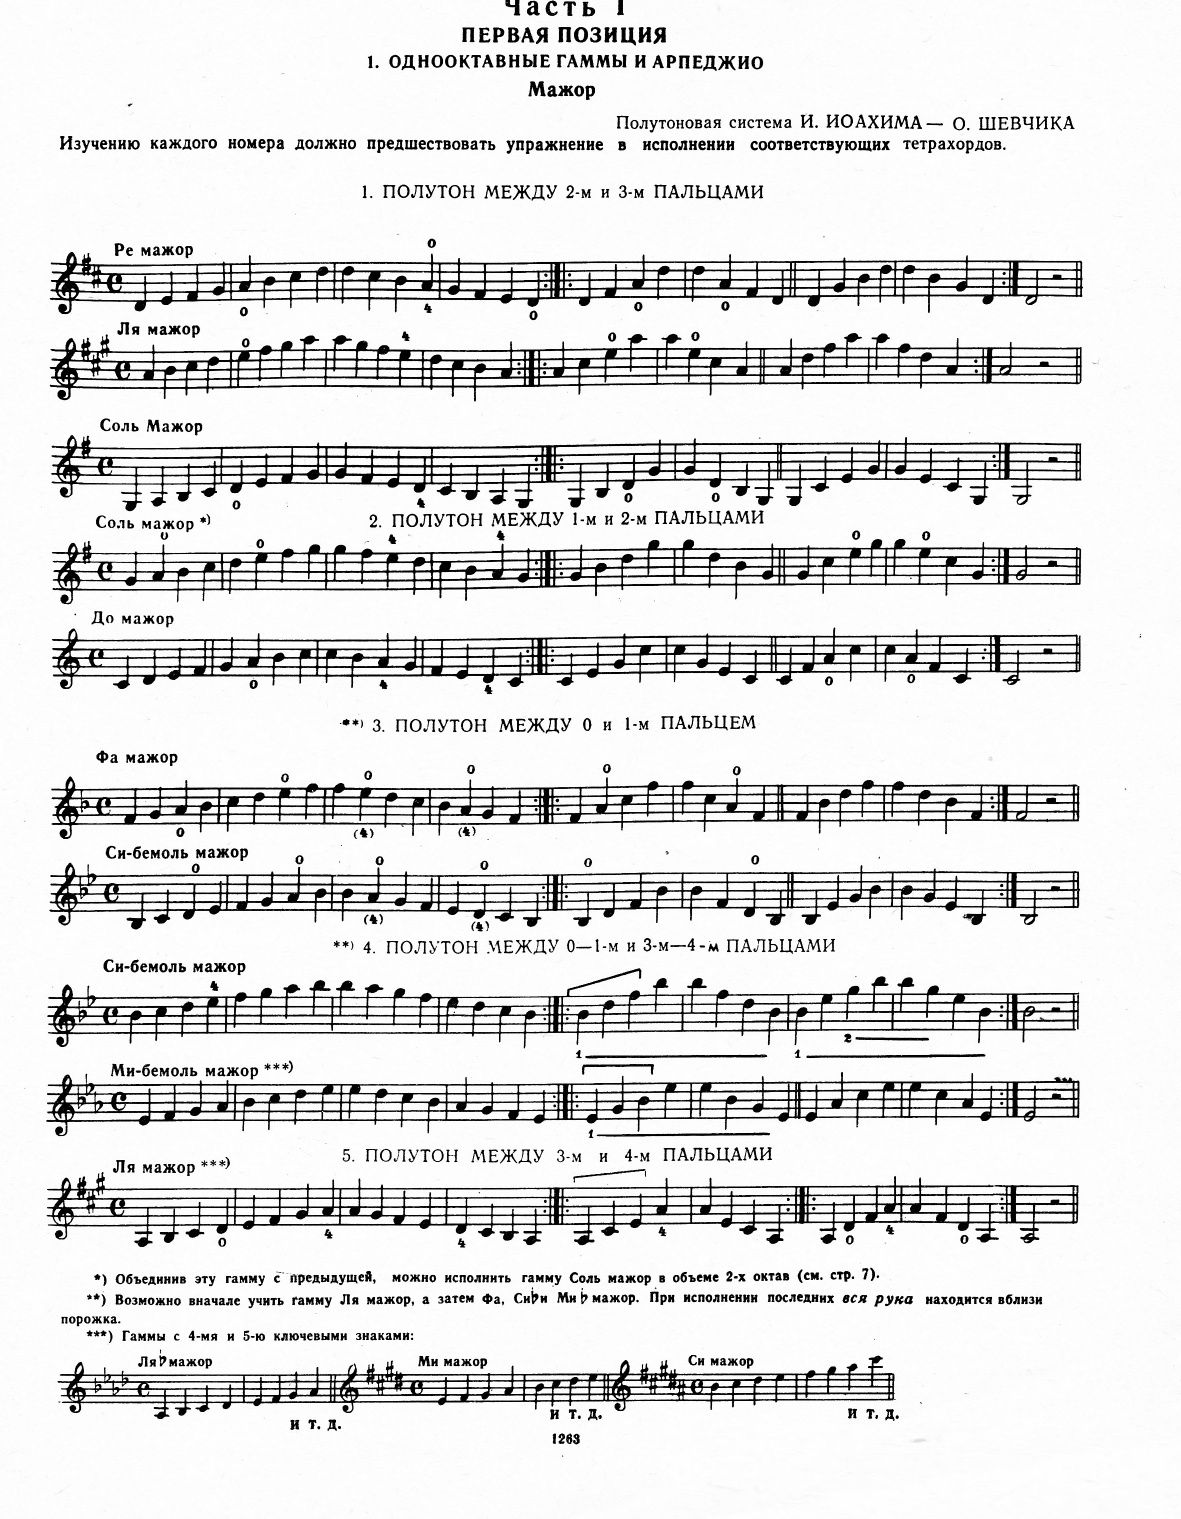 Ноты для Скрипки
Григорян
Гаммы и арпеджио для скрипки.
Состояние абс